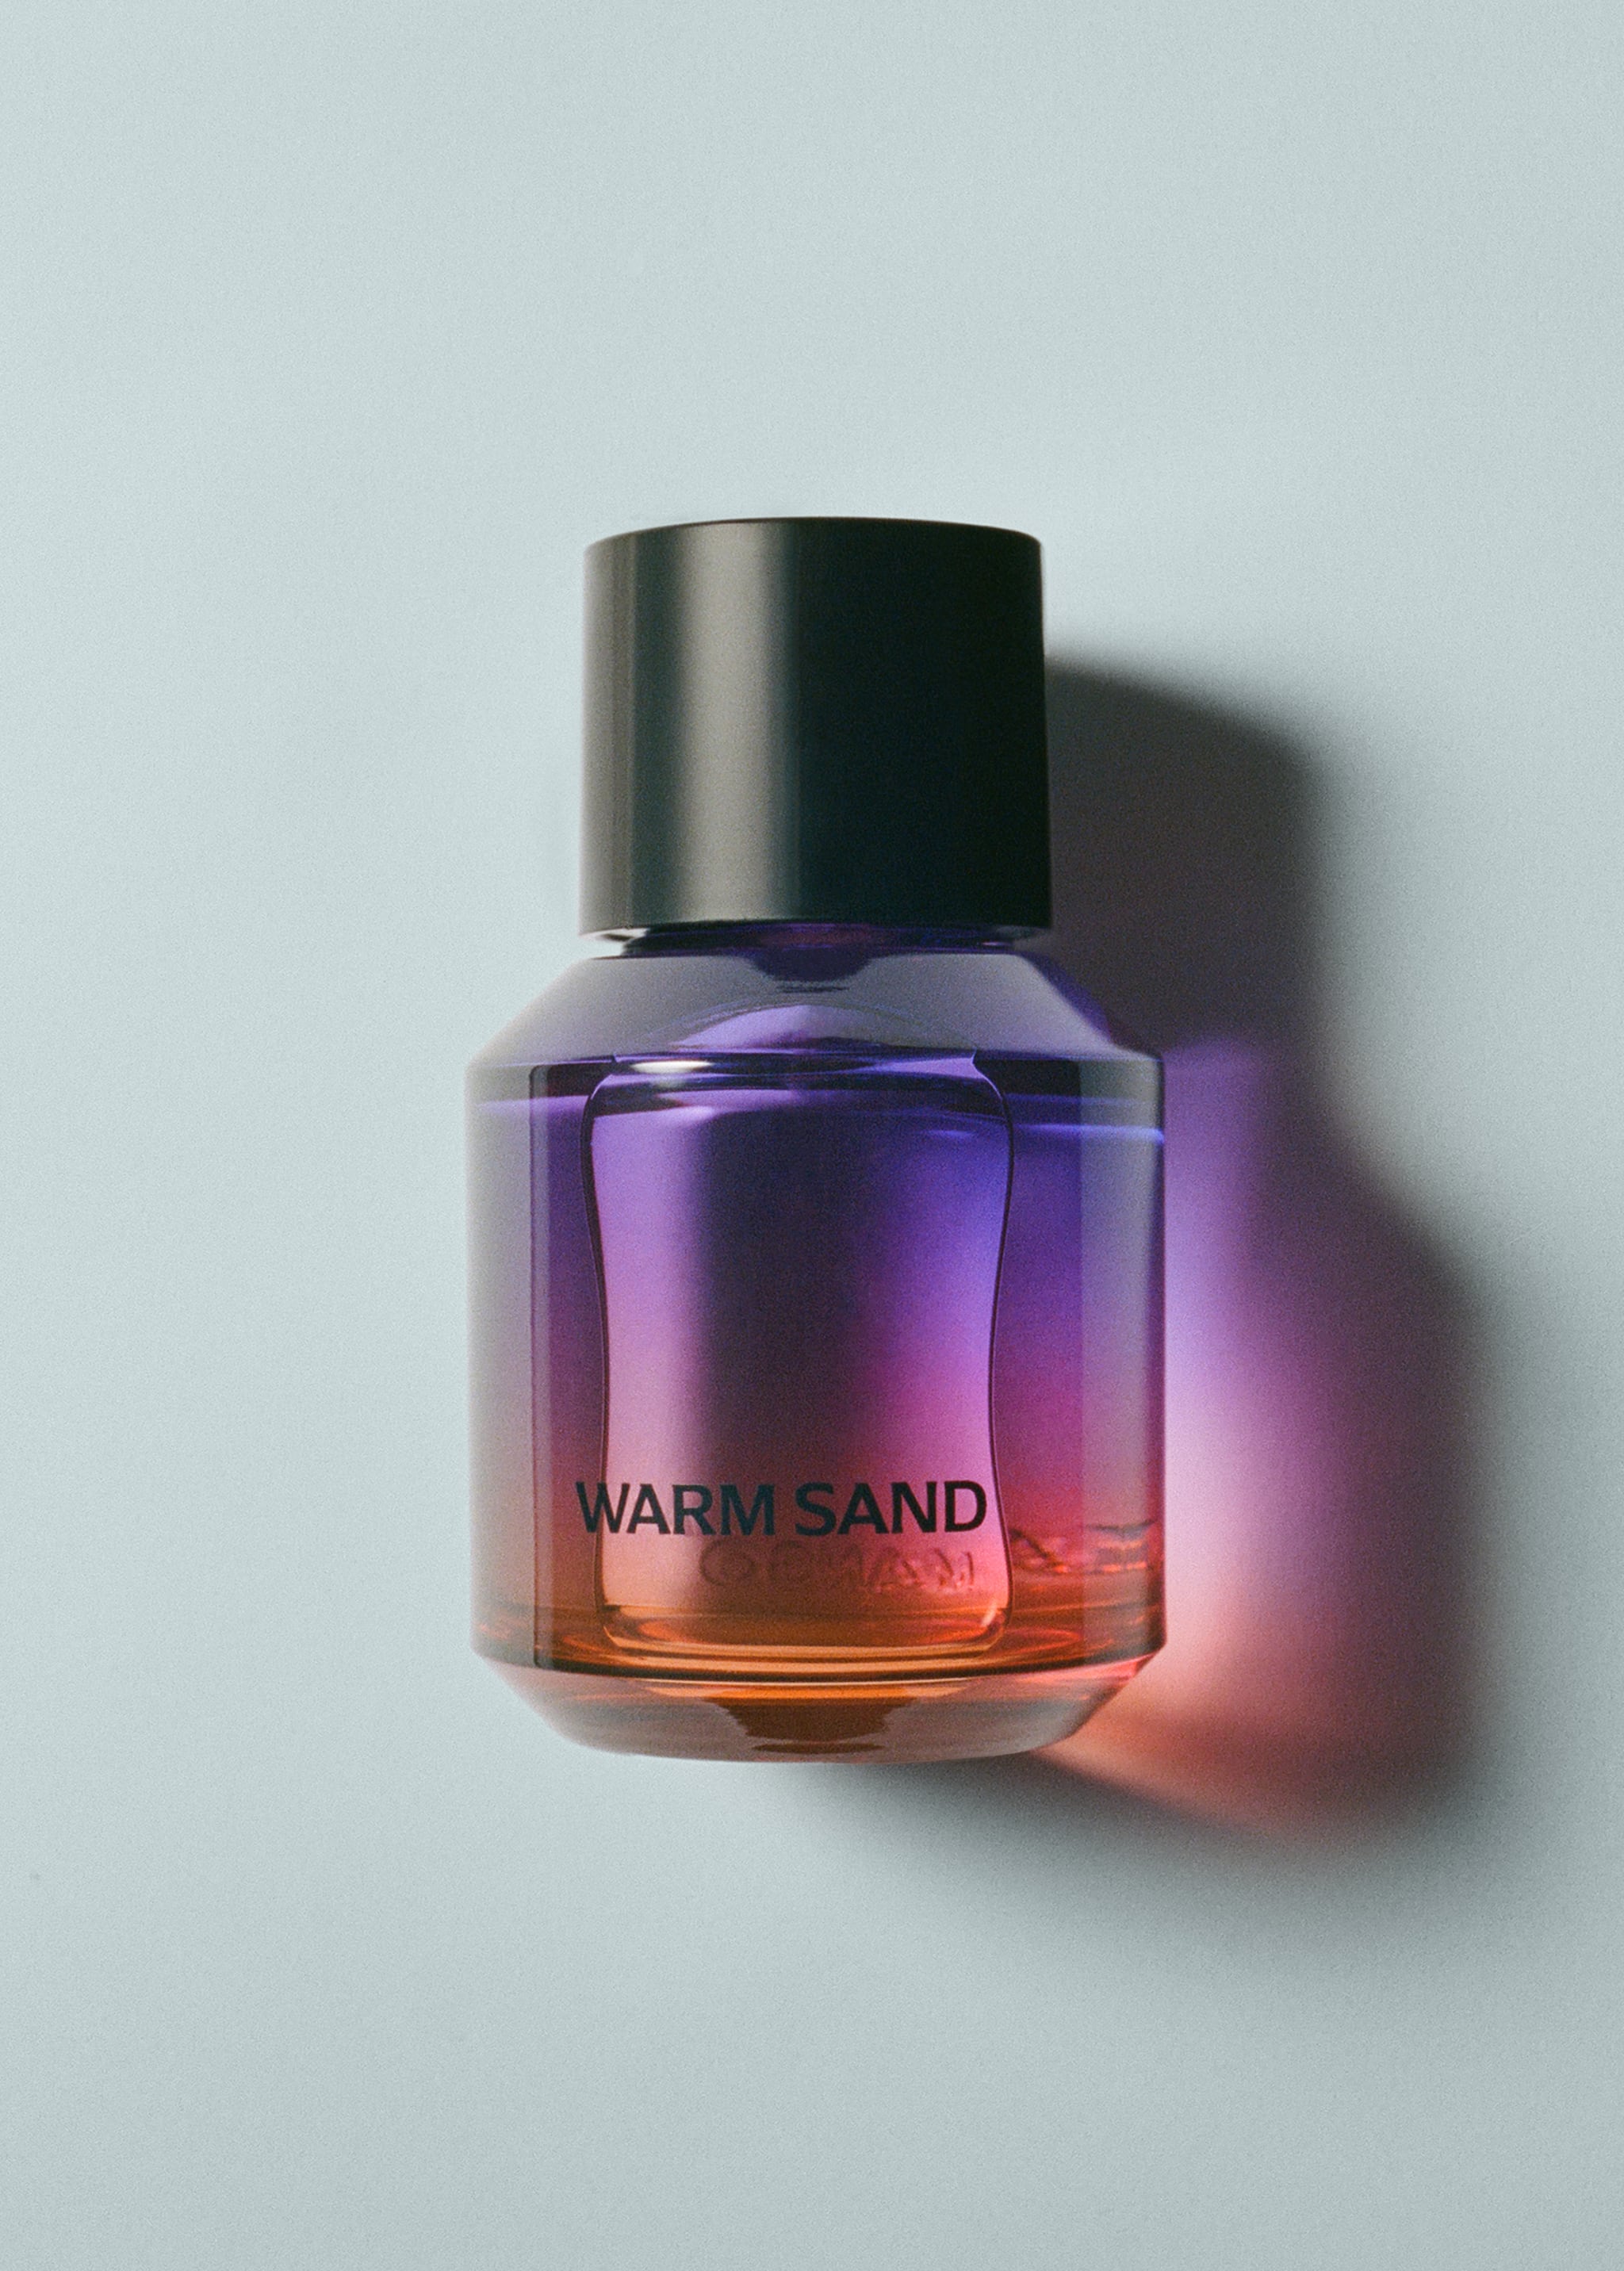 Parfum warmsand - Article sans modèle